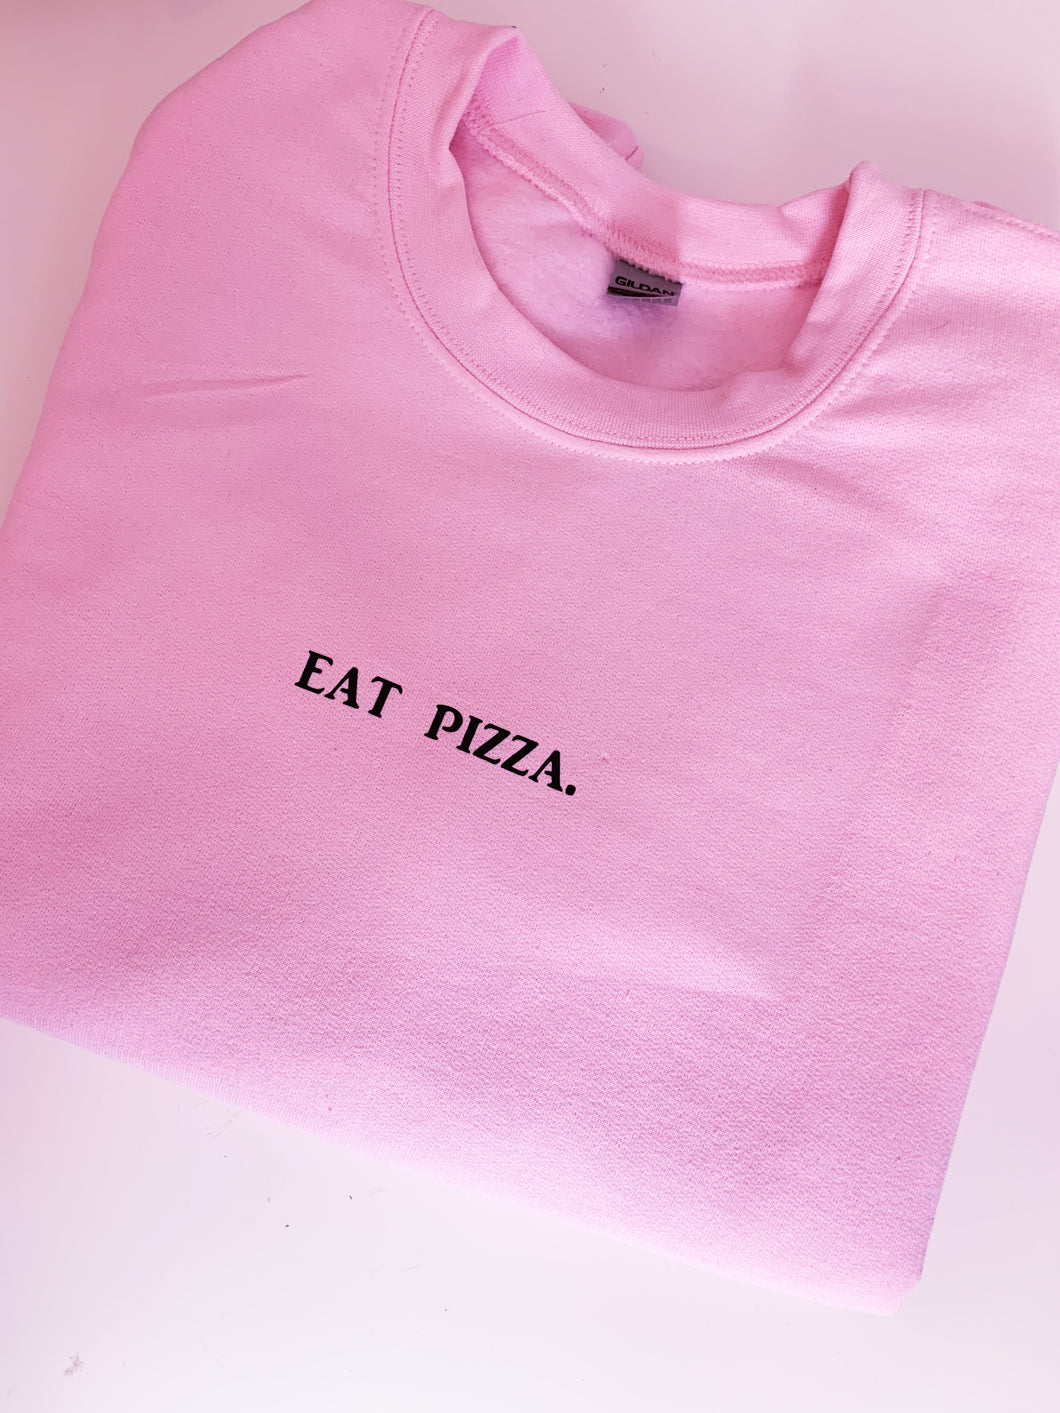 Eat pizza. Oversized sweatshirt